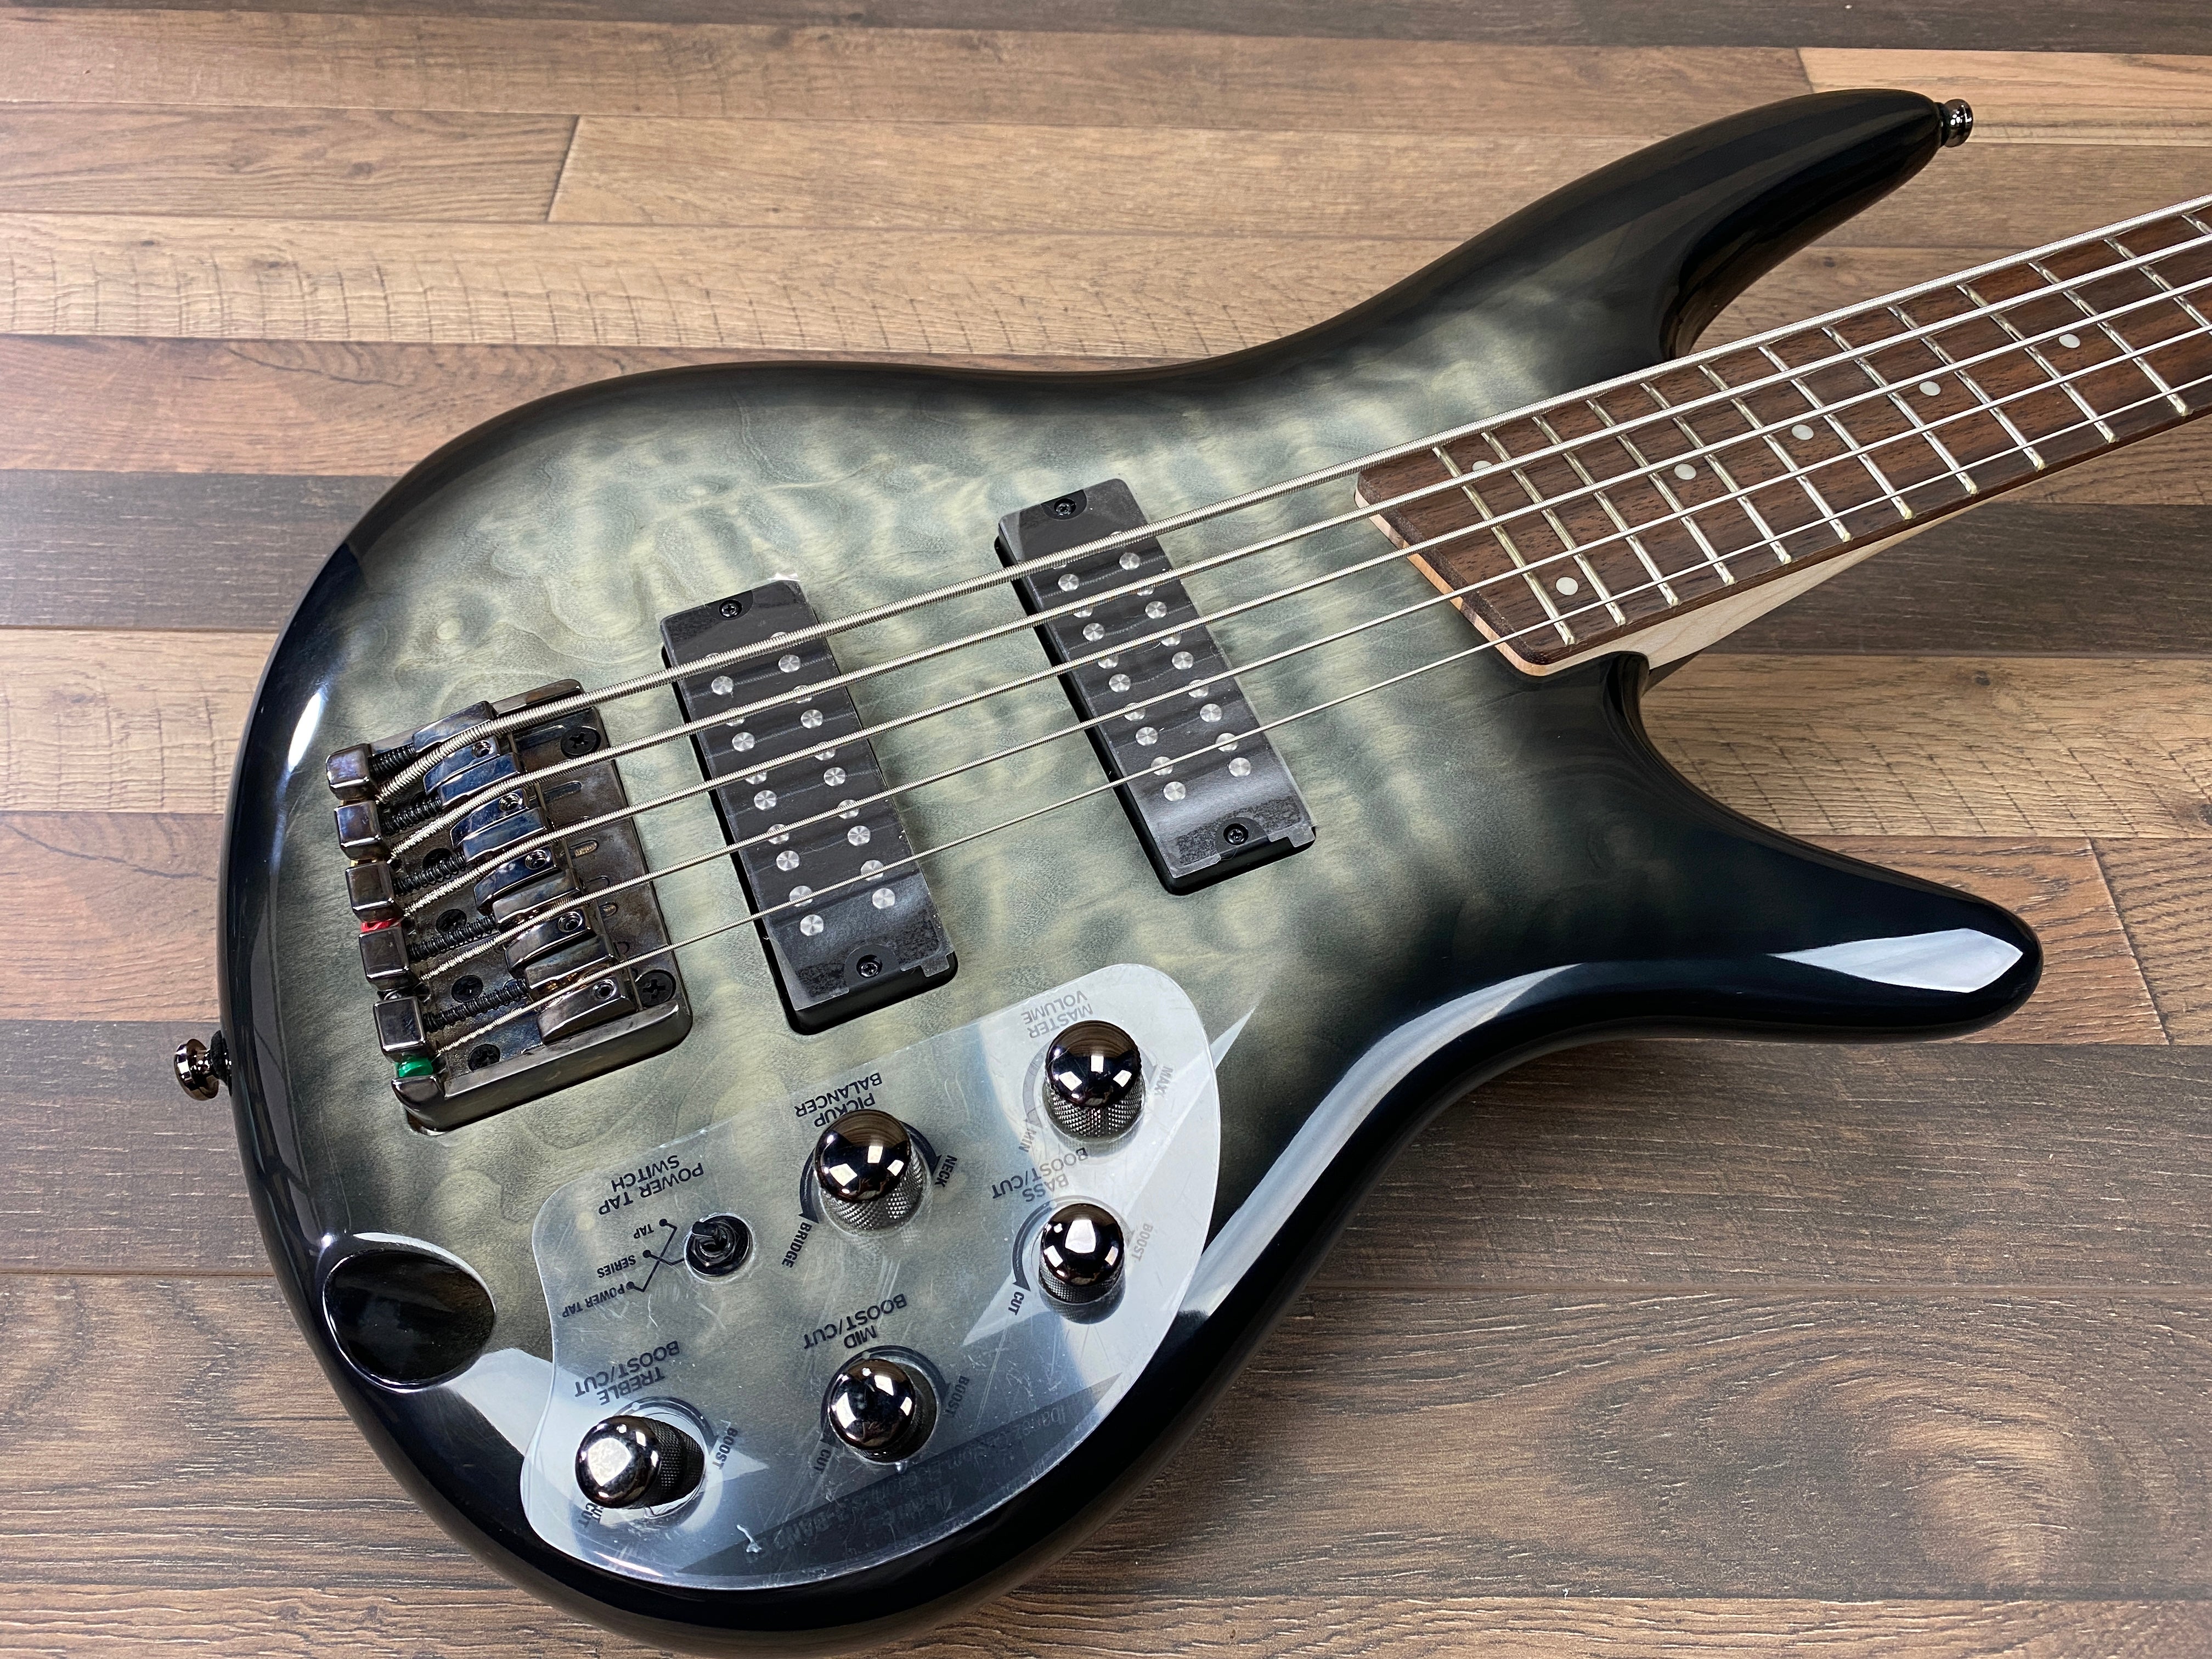 Ibanez SR405EQMSKG 5-String Electric Bass Guitar SKG:Surreal Black Burst Gloss